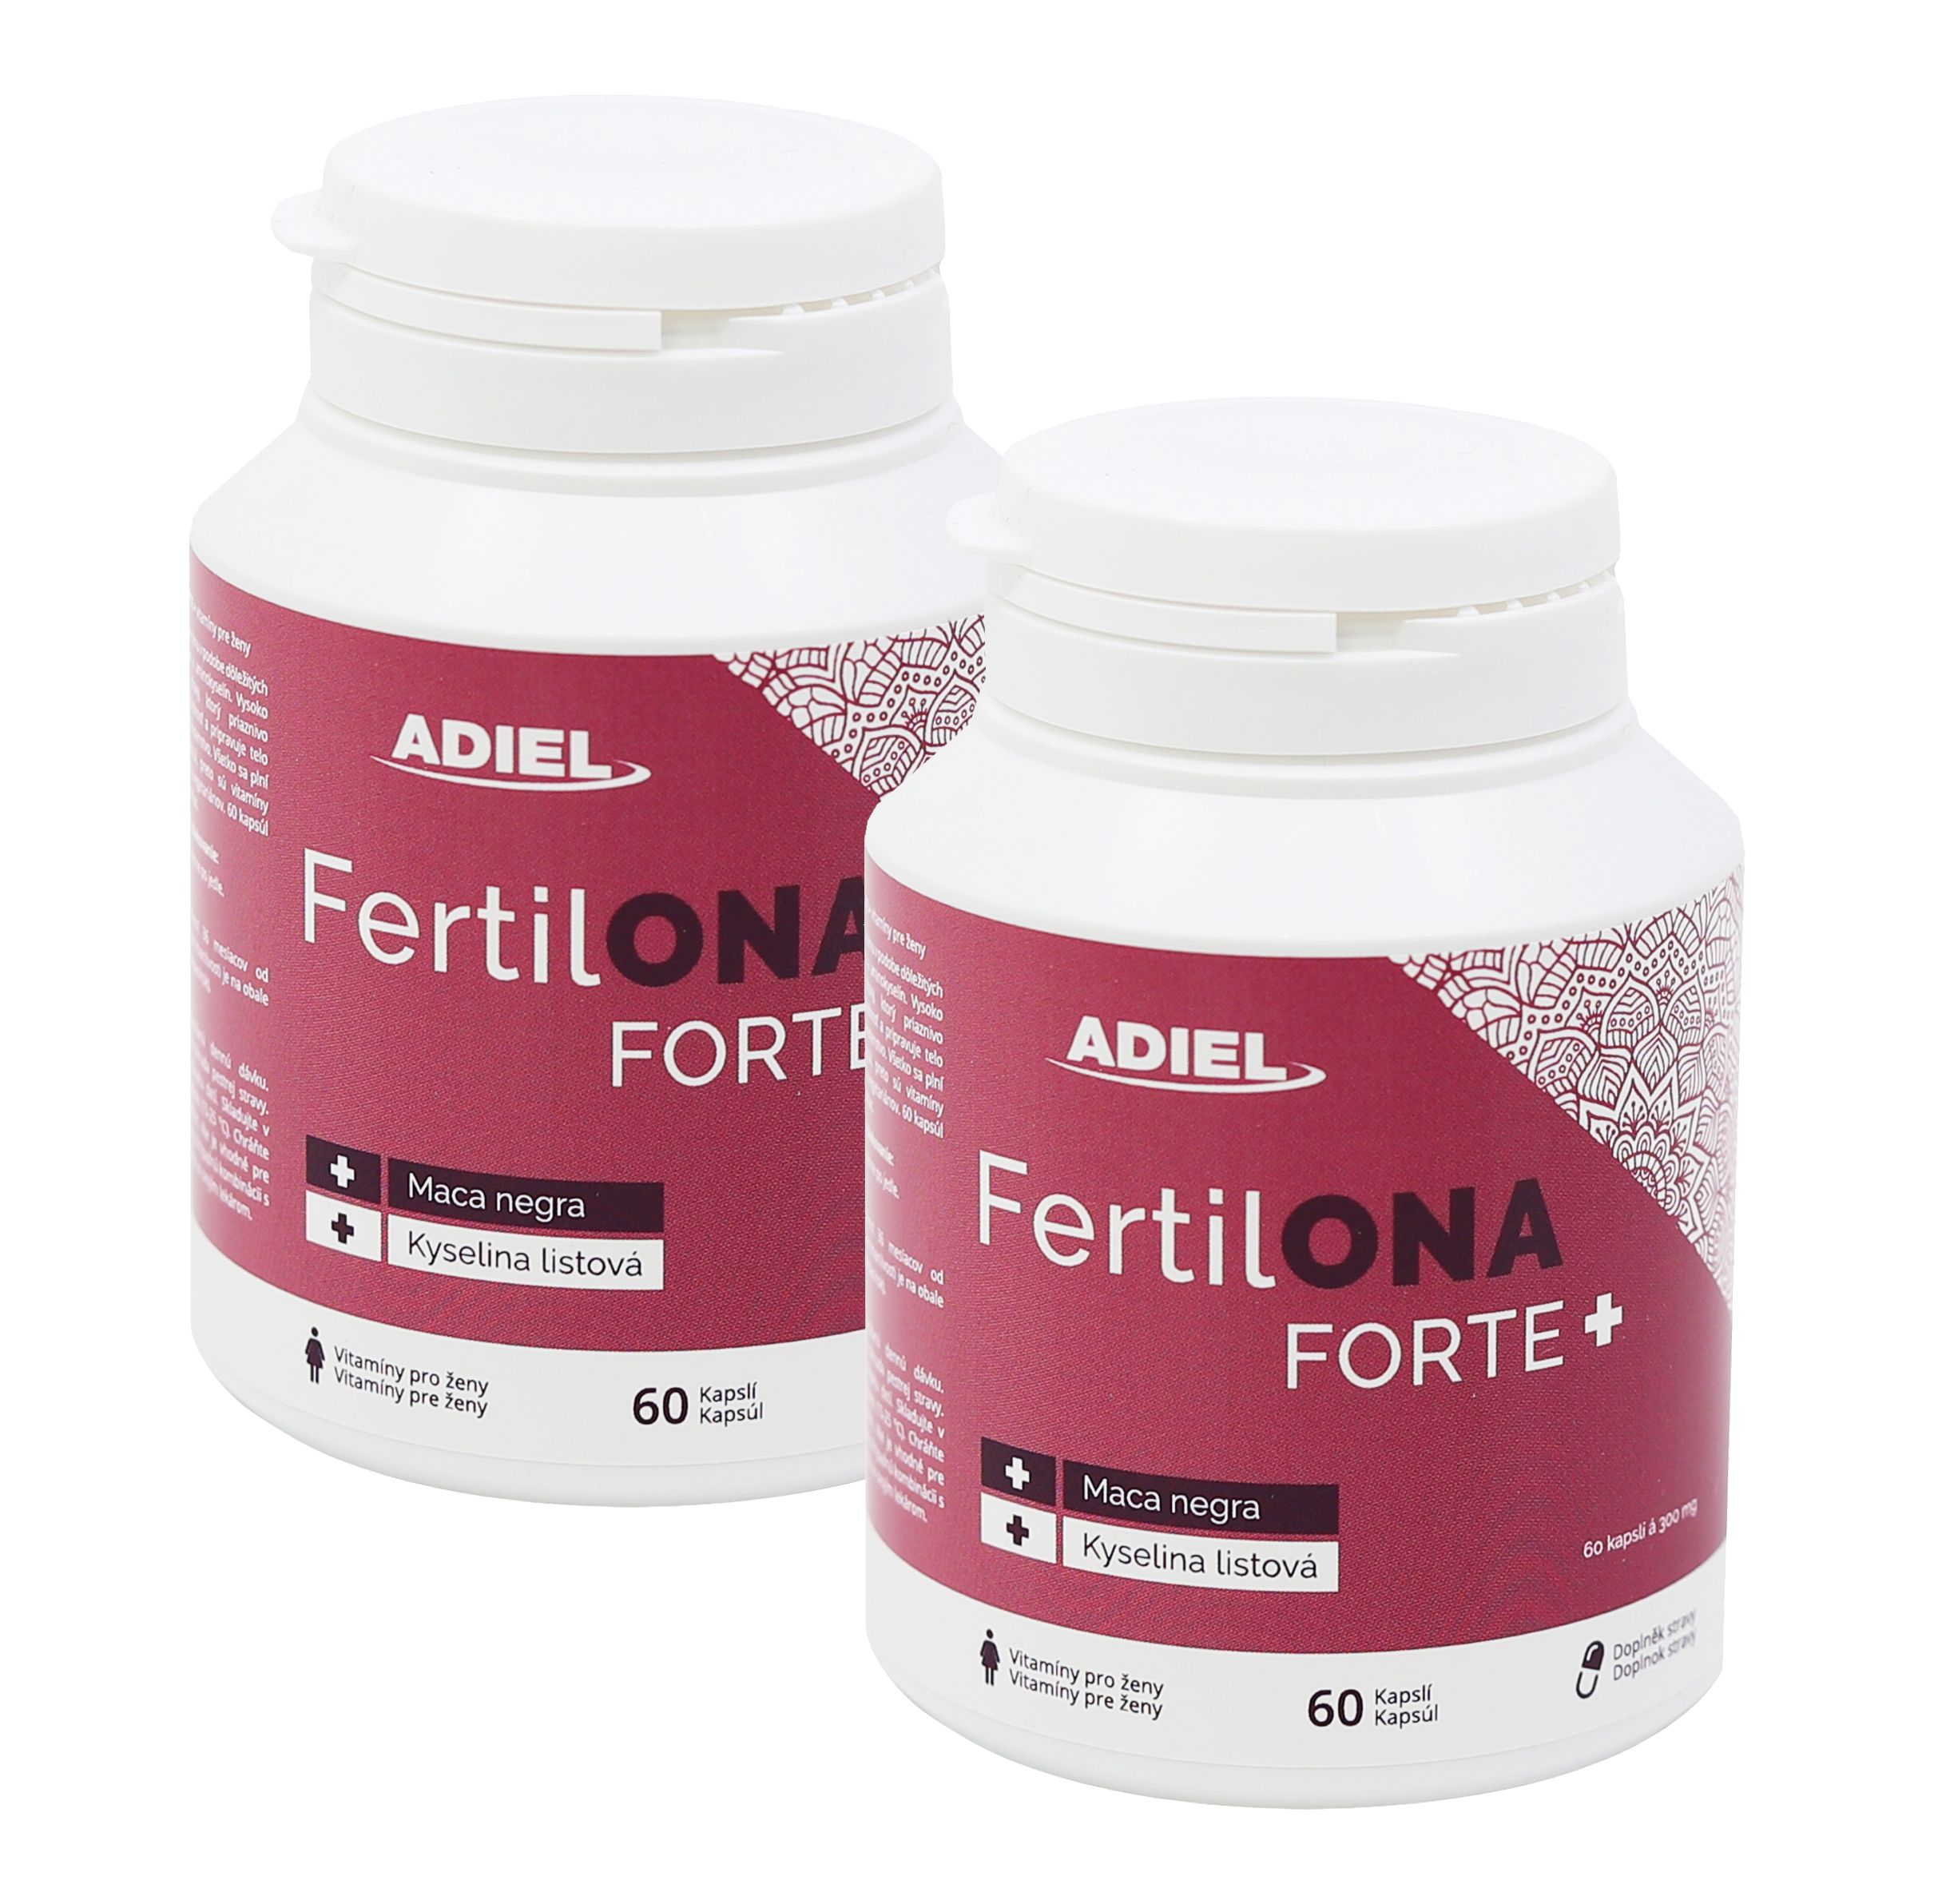 ADIEL FertilONA forte plus - Vitamíny pro ženy 60 kapslí 2  ks v balení: 2x60 kapslí